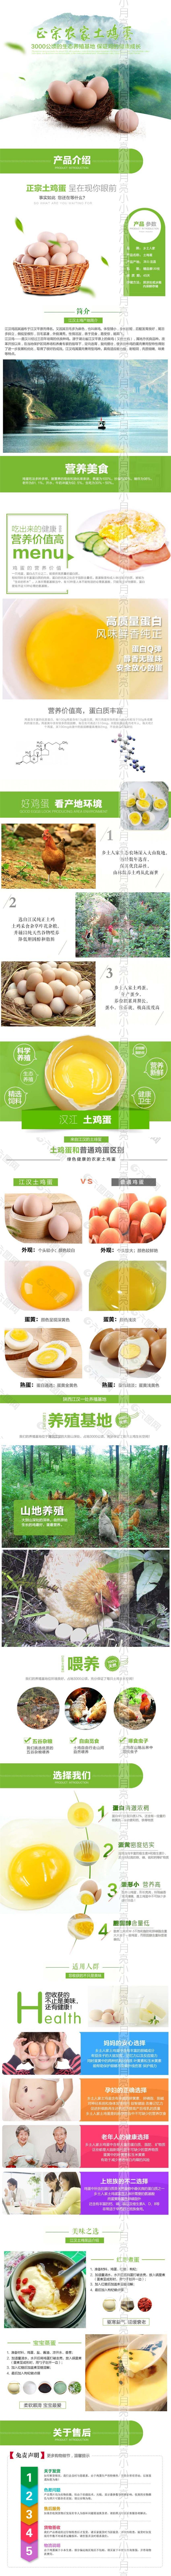 营养健康淘宝土鸡蛋详情页psd分层素材